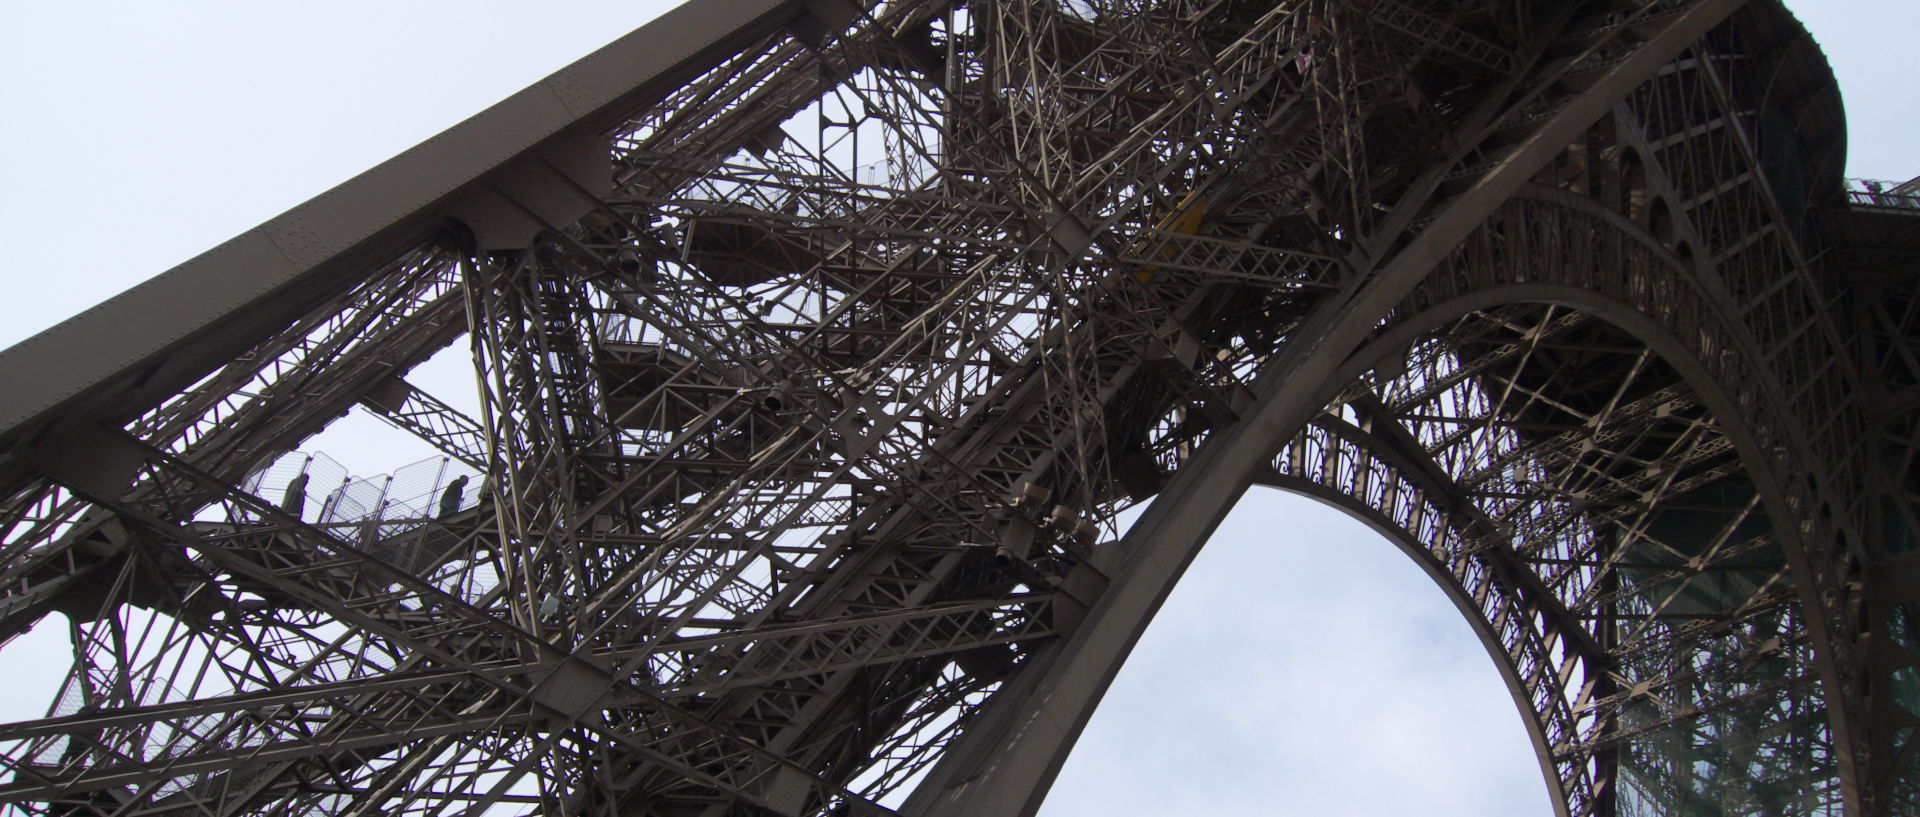 Dimanche 2 novembre 2008 (3), la tour Eiffel, à Paris.